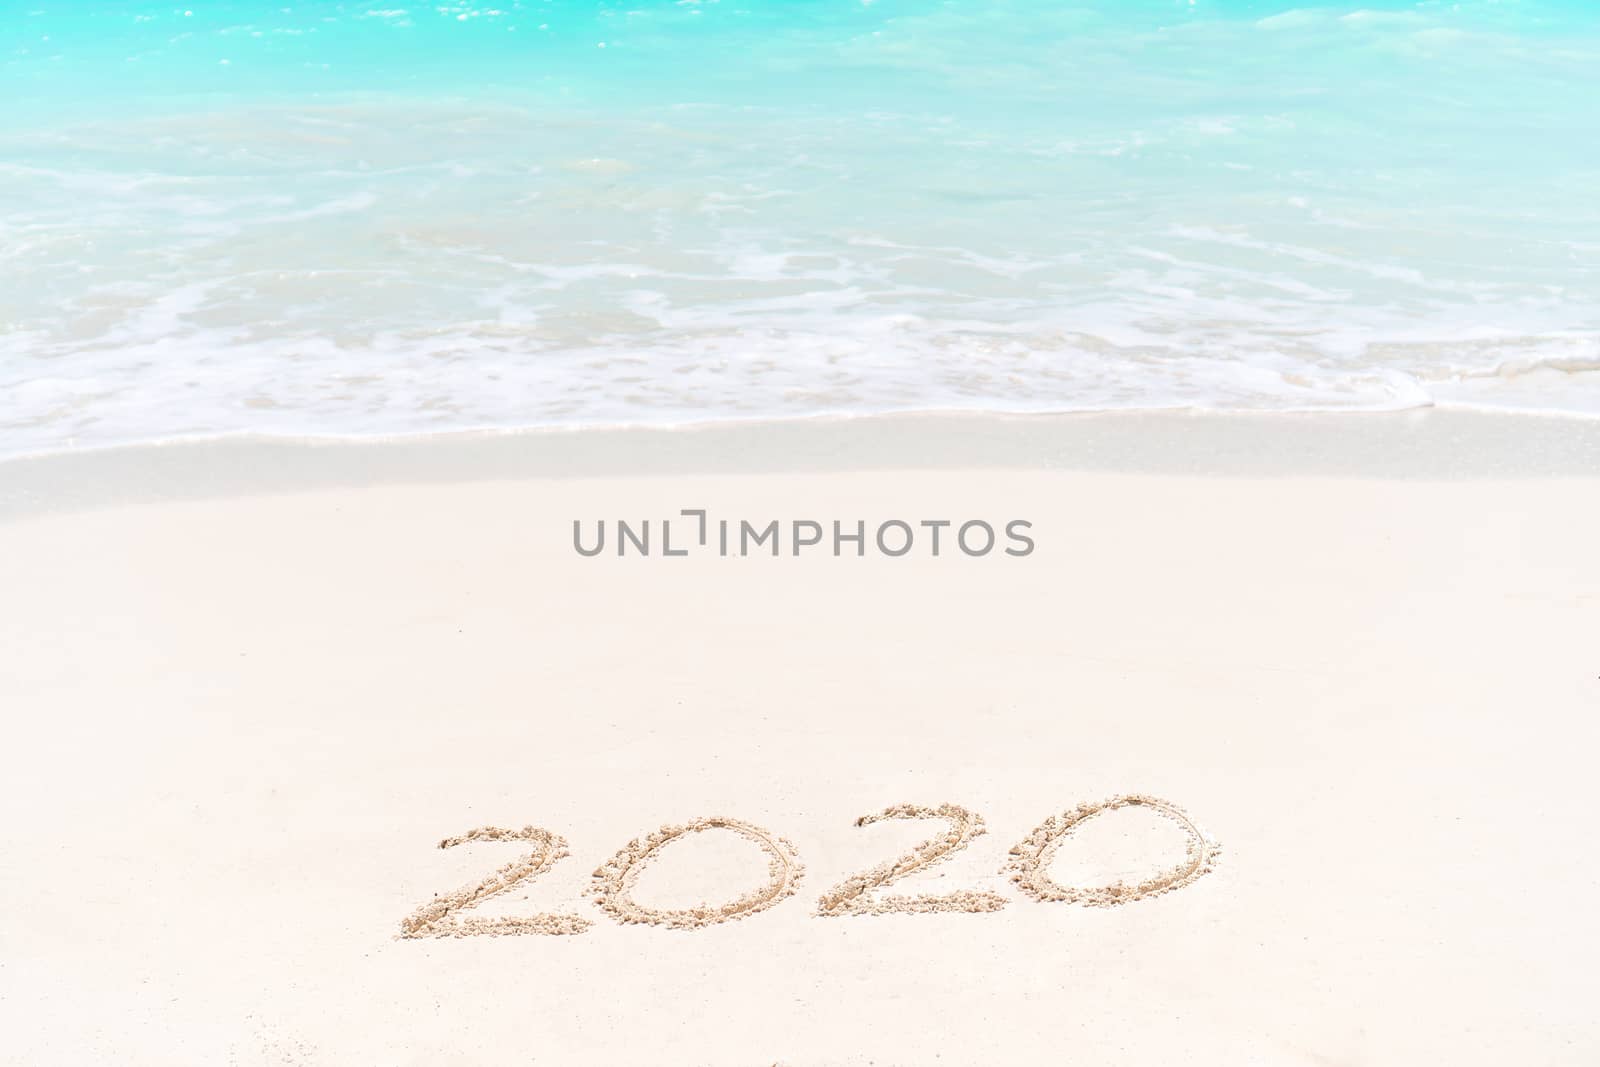 2020 handwritten on sandy beach with soft ocean wave on background by travnikovstudio